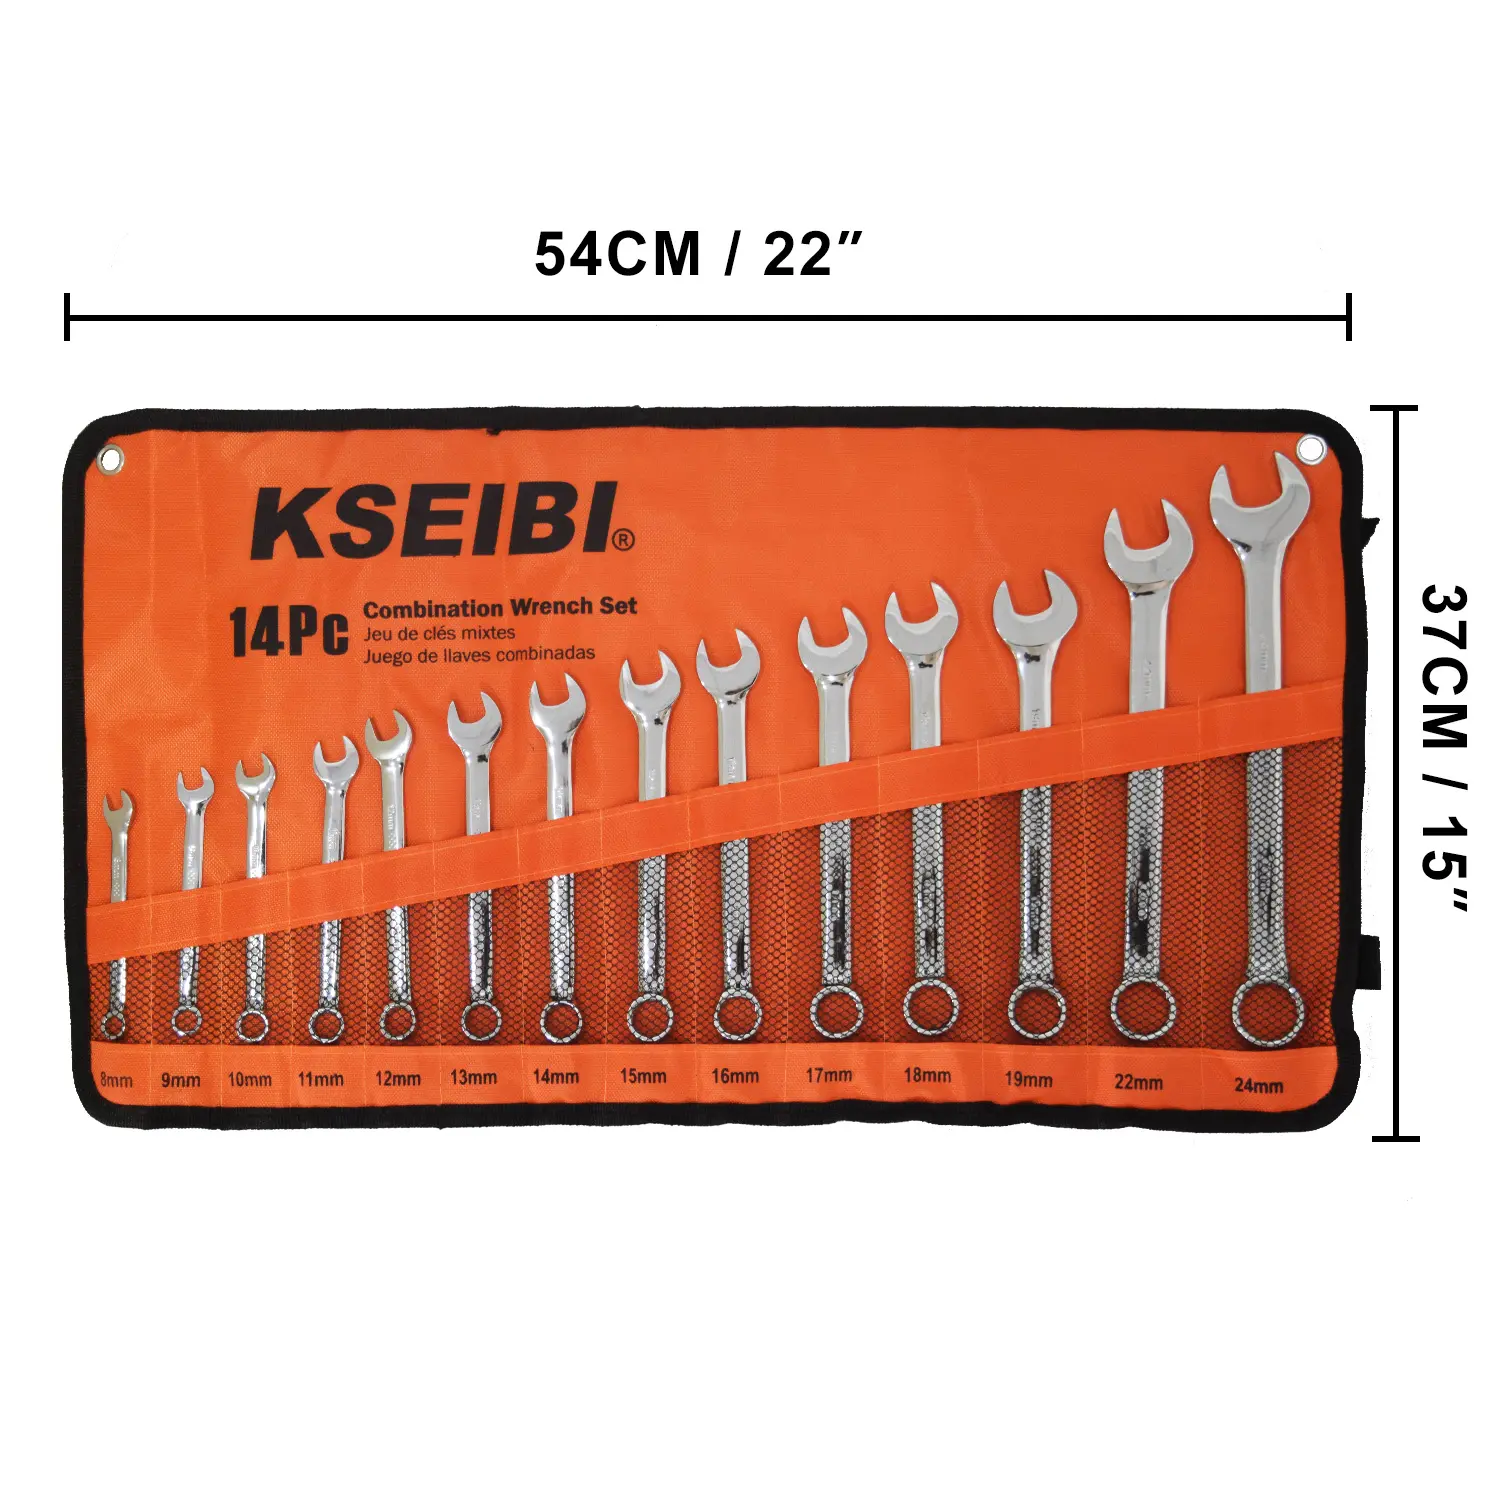 KSEIBI 8-24Mm Kombinasi Kunci Pas Set dengan Berbagai Jenis Kunci Pas 14Pcs dengan Tas Kain